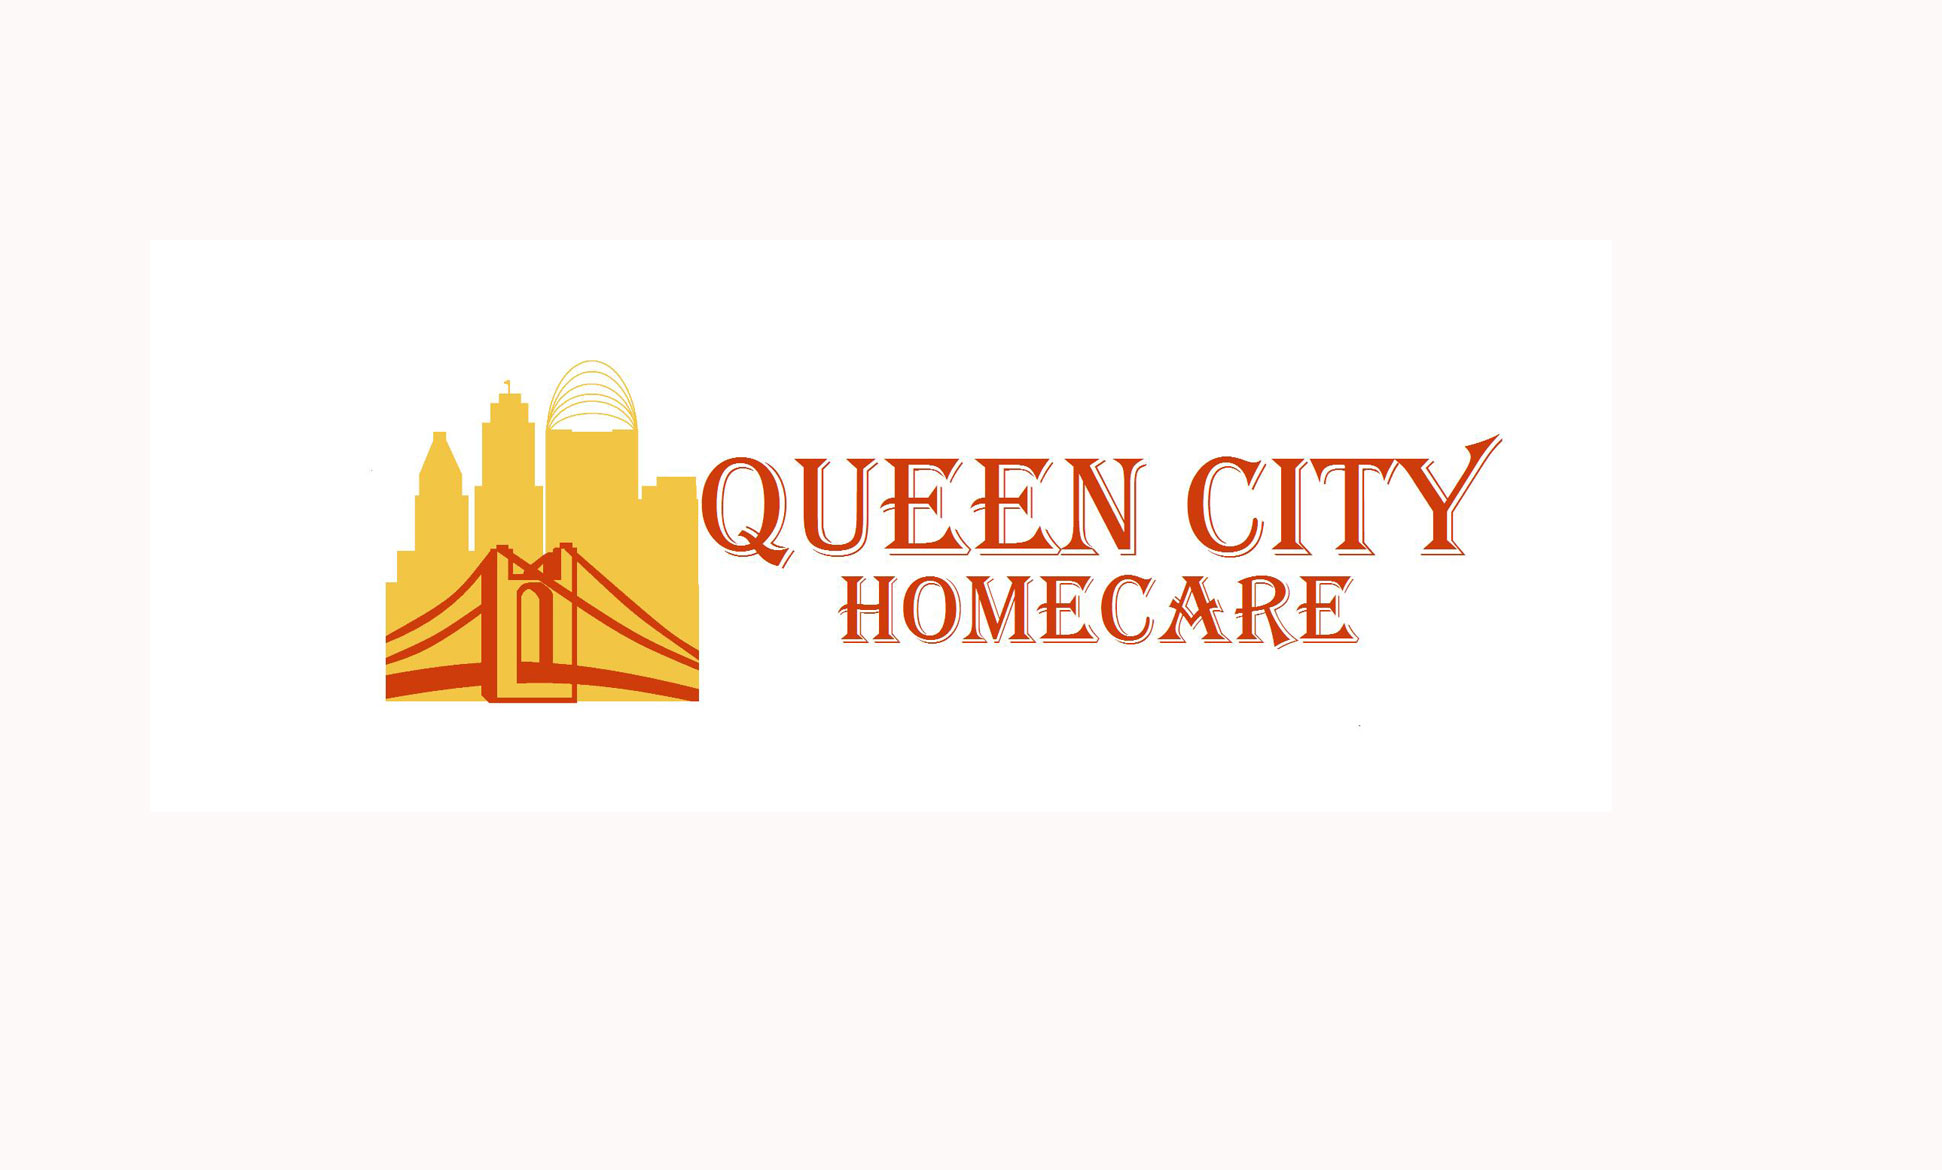 Queen City Homecare image